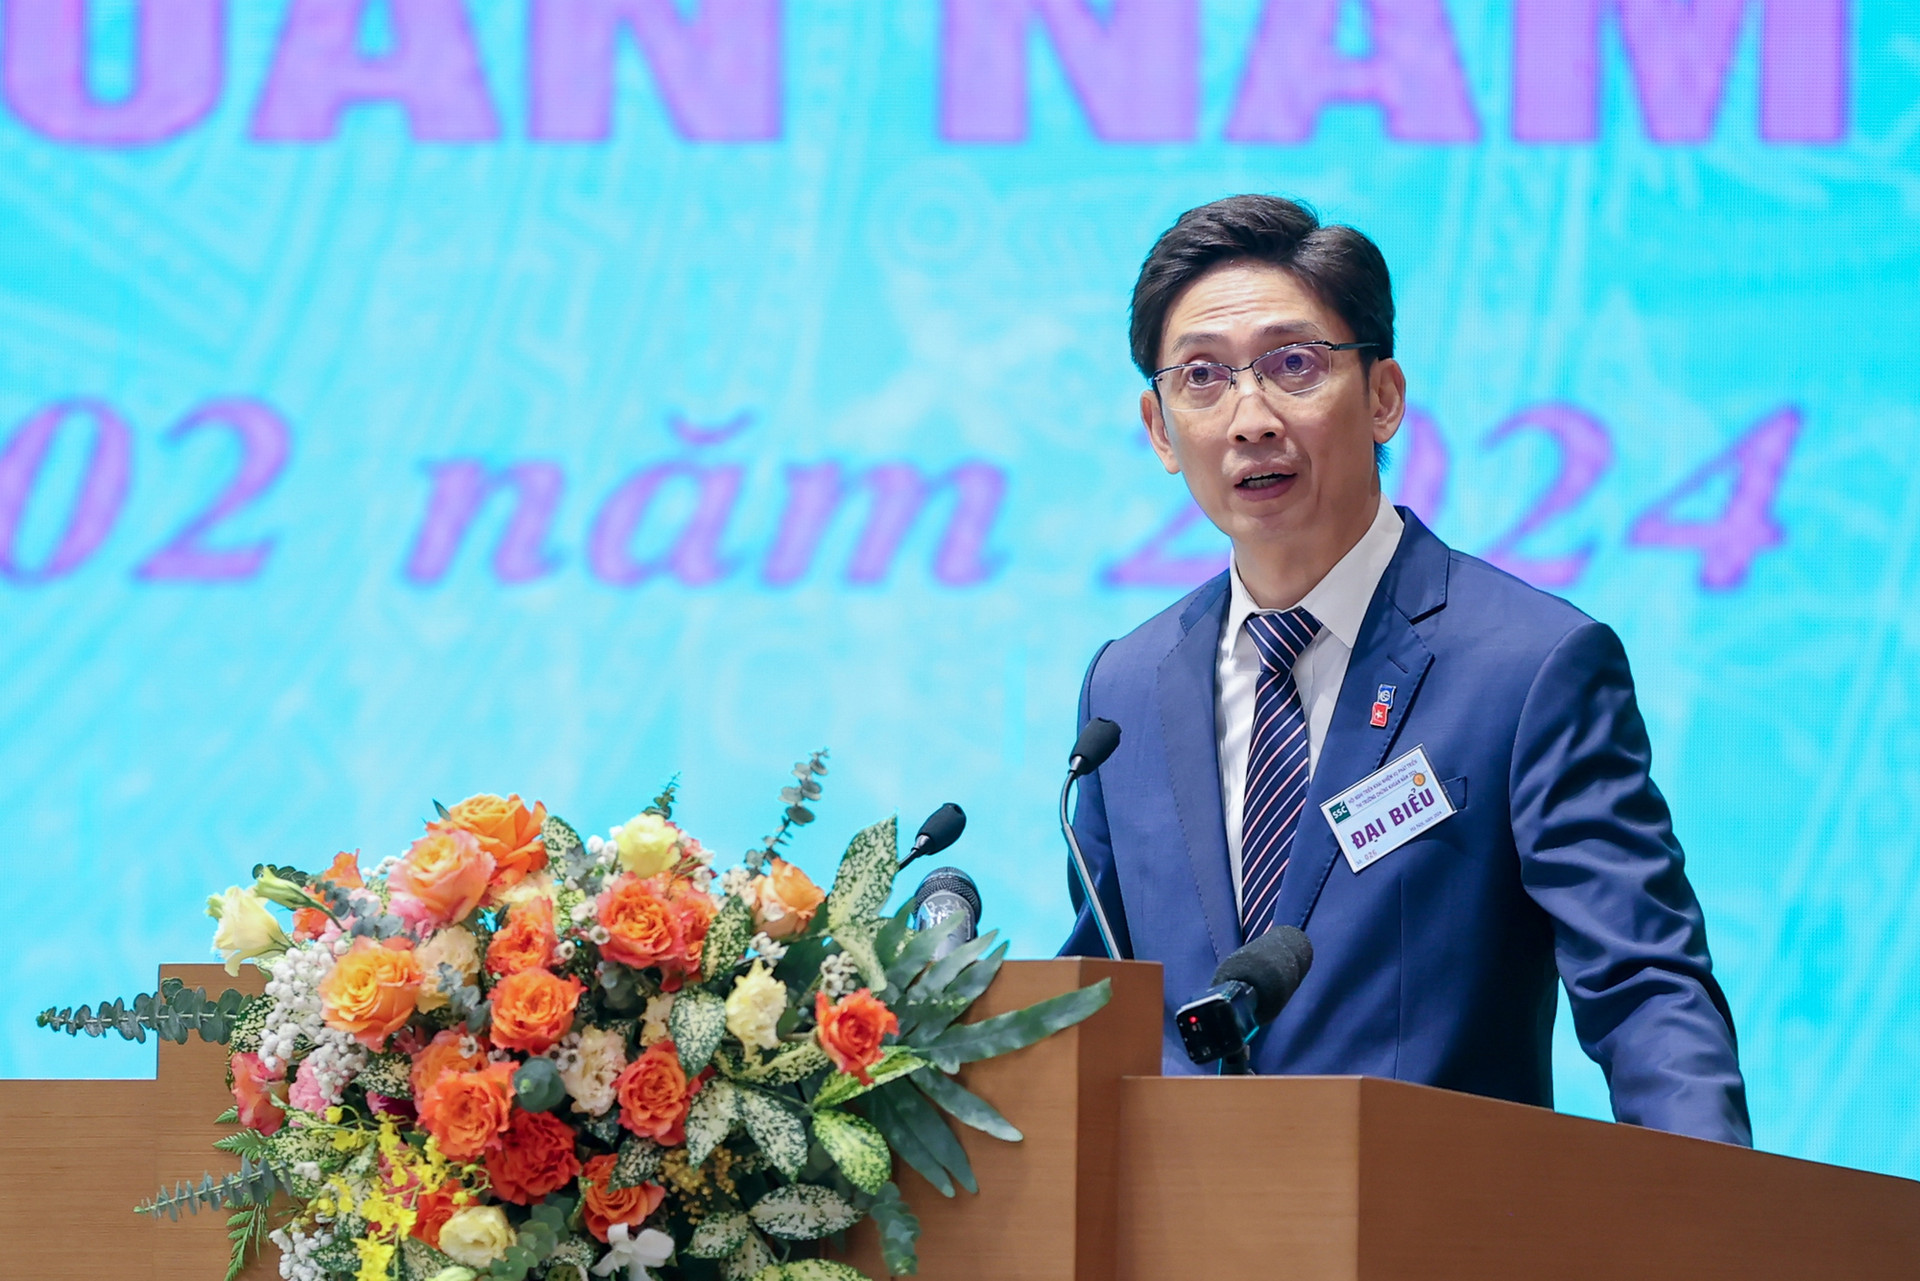 Khai mở thị trường vốn Việt Nam qua nâng hạng lên thị trường mới nổi- Ảnh 2.